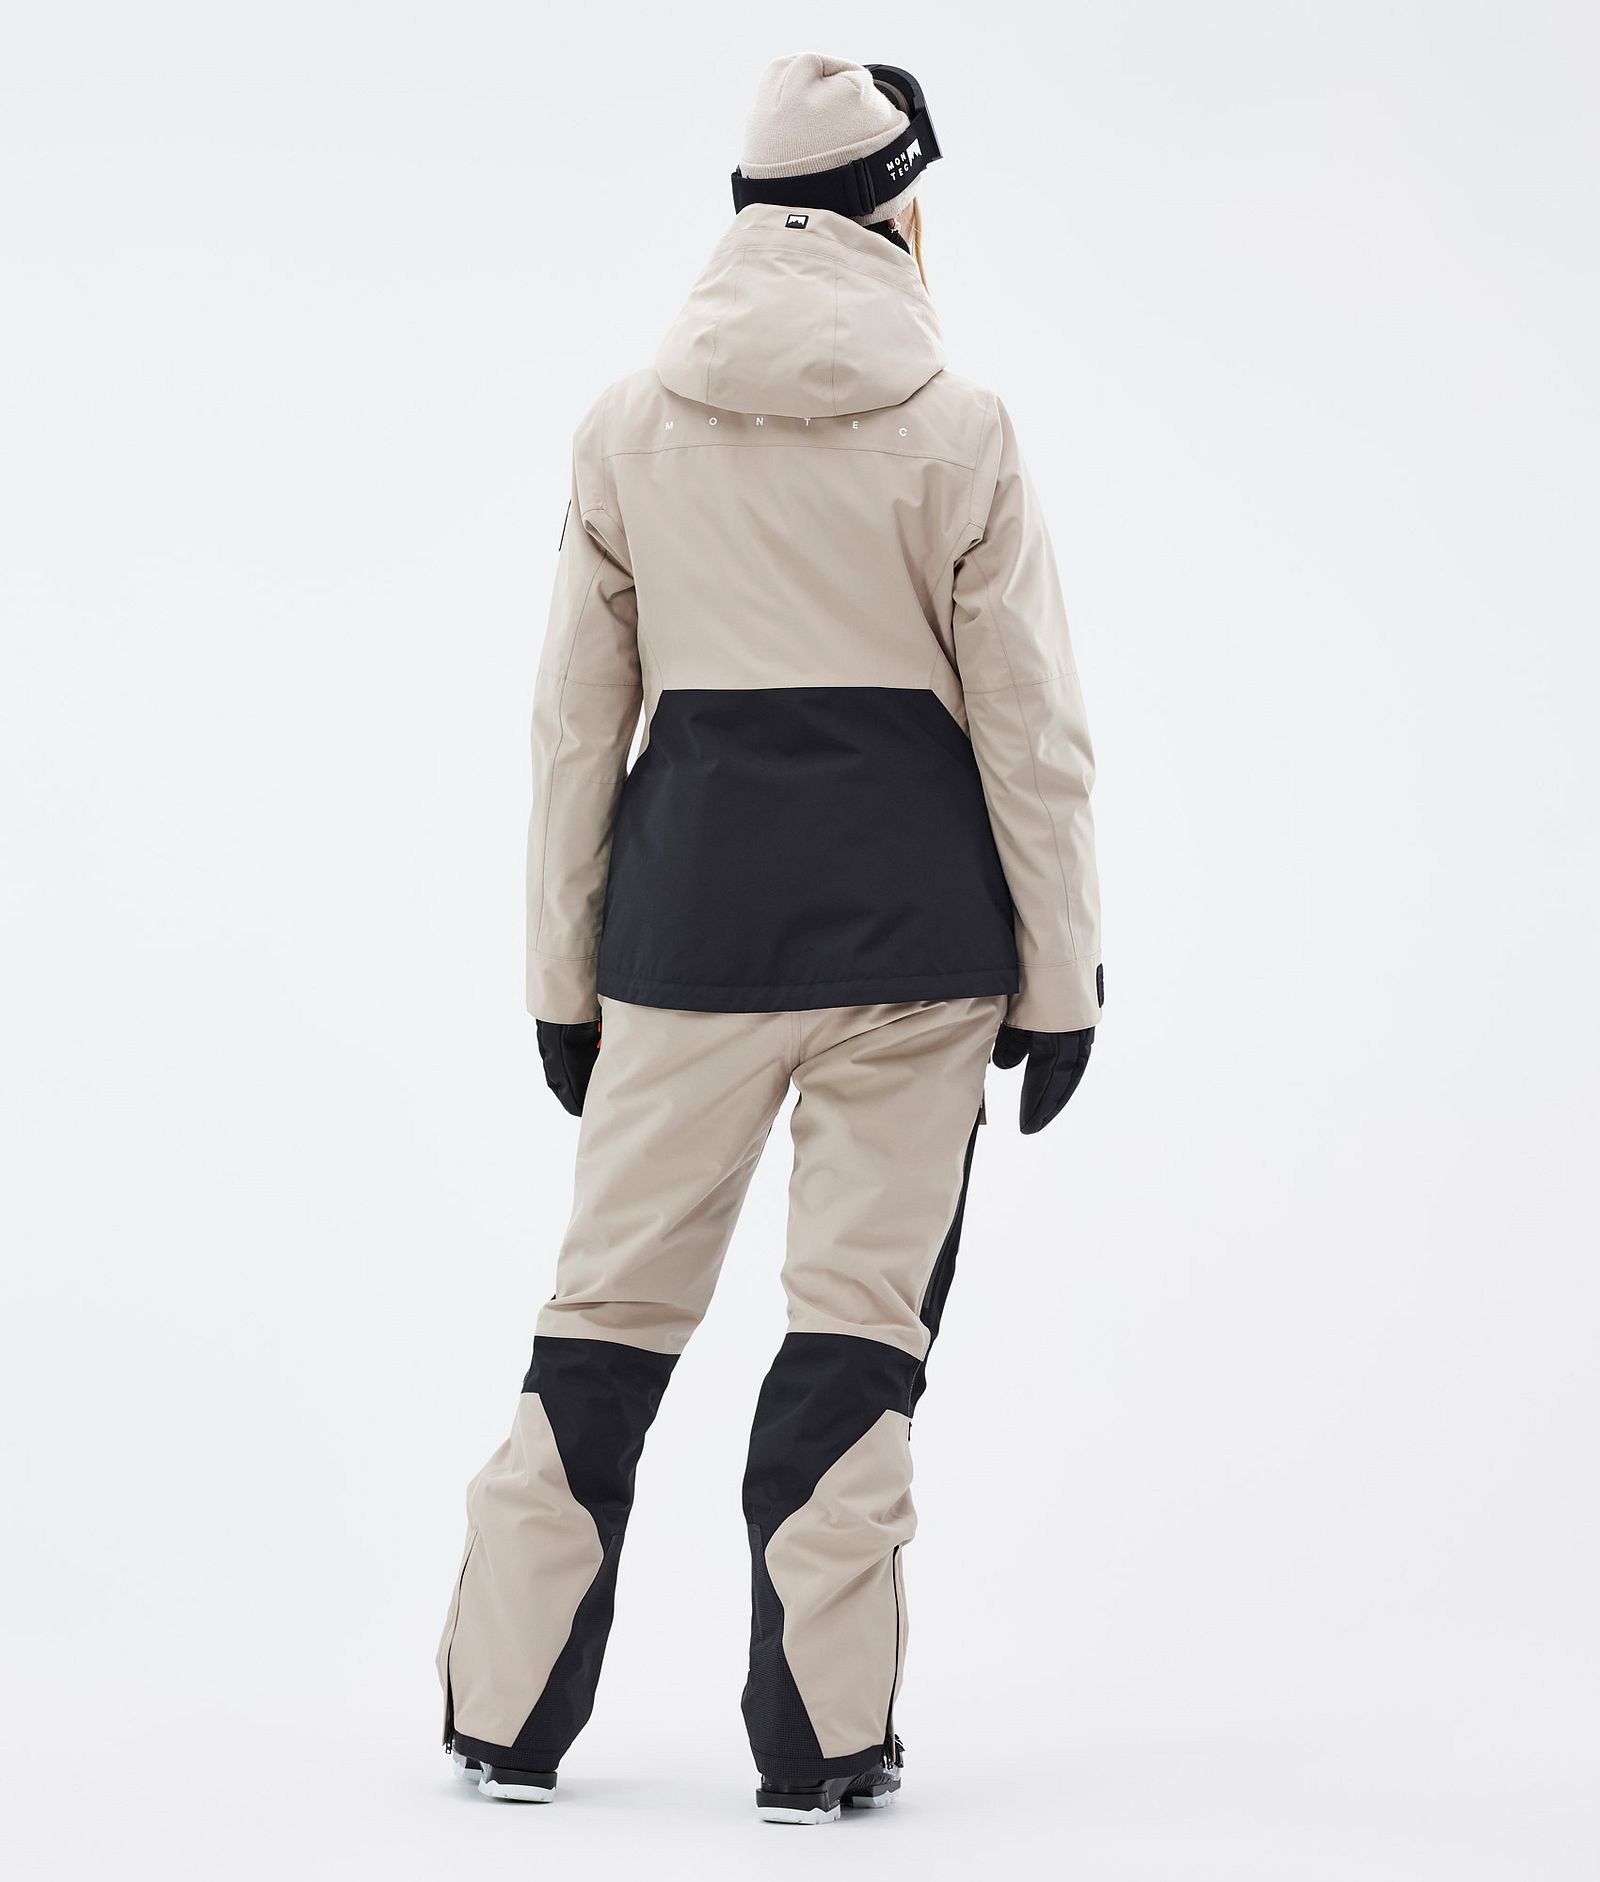 Montec Moss W Outfit de Esquí Mujer Sand/Black